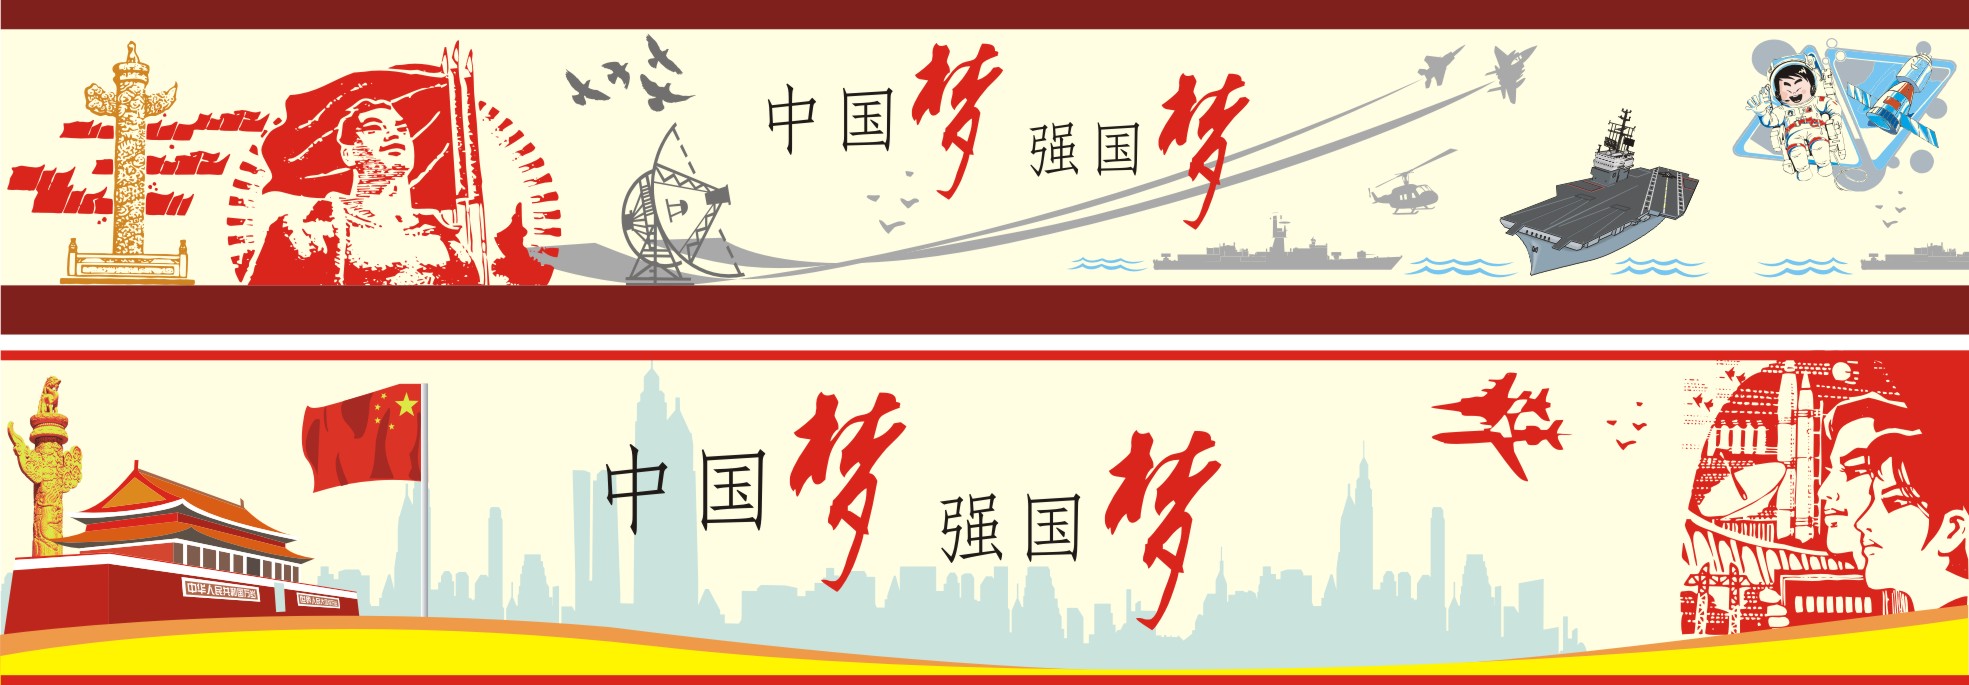 中国梦强国梦航母天安门军舰战机宇航员天宫卡通墙绘手绘素材设计